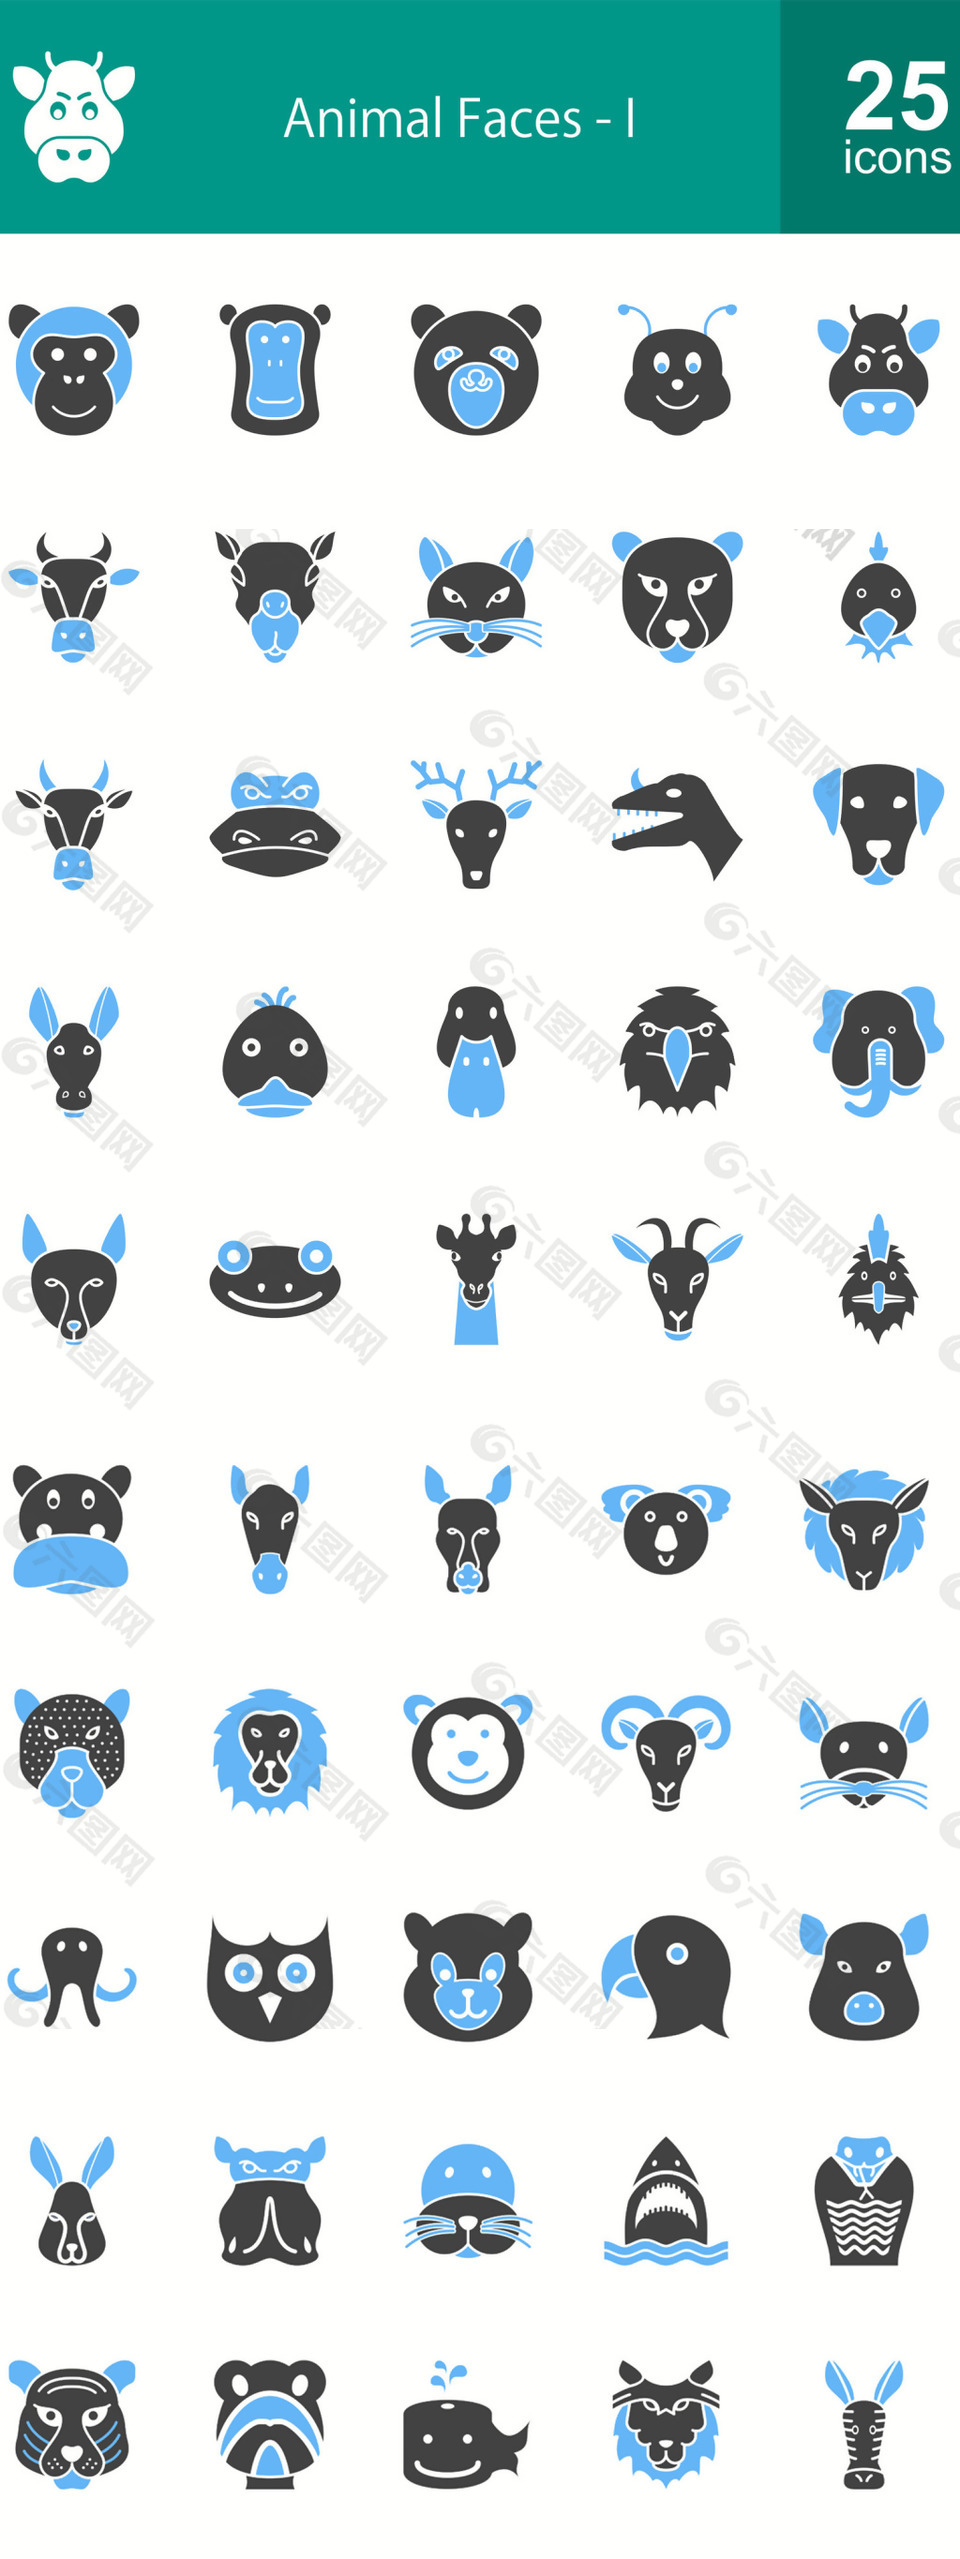 50个动物脸被填满了蓝色的黑色图标